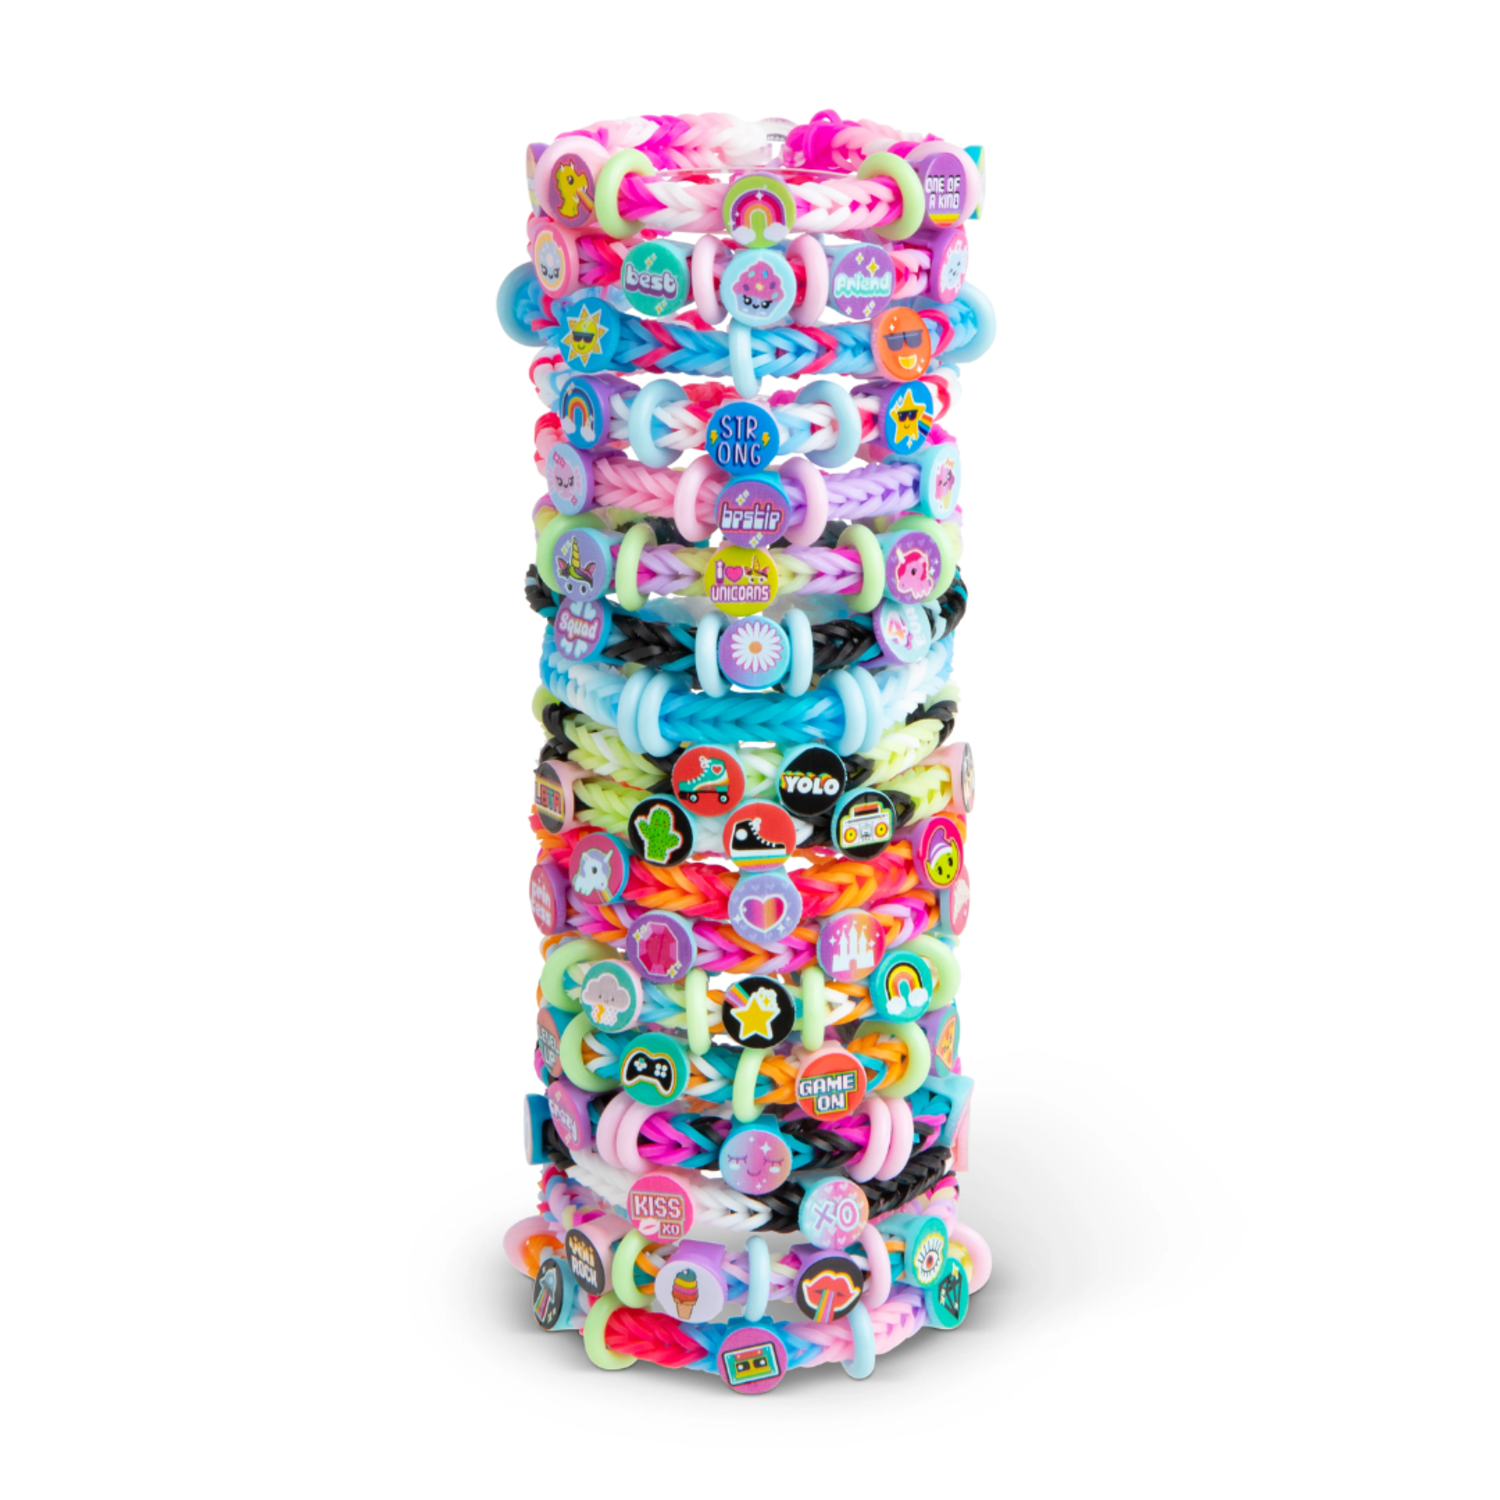 Rainbow Loom® Beadmoji™ Trendy Bracelet Kit